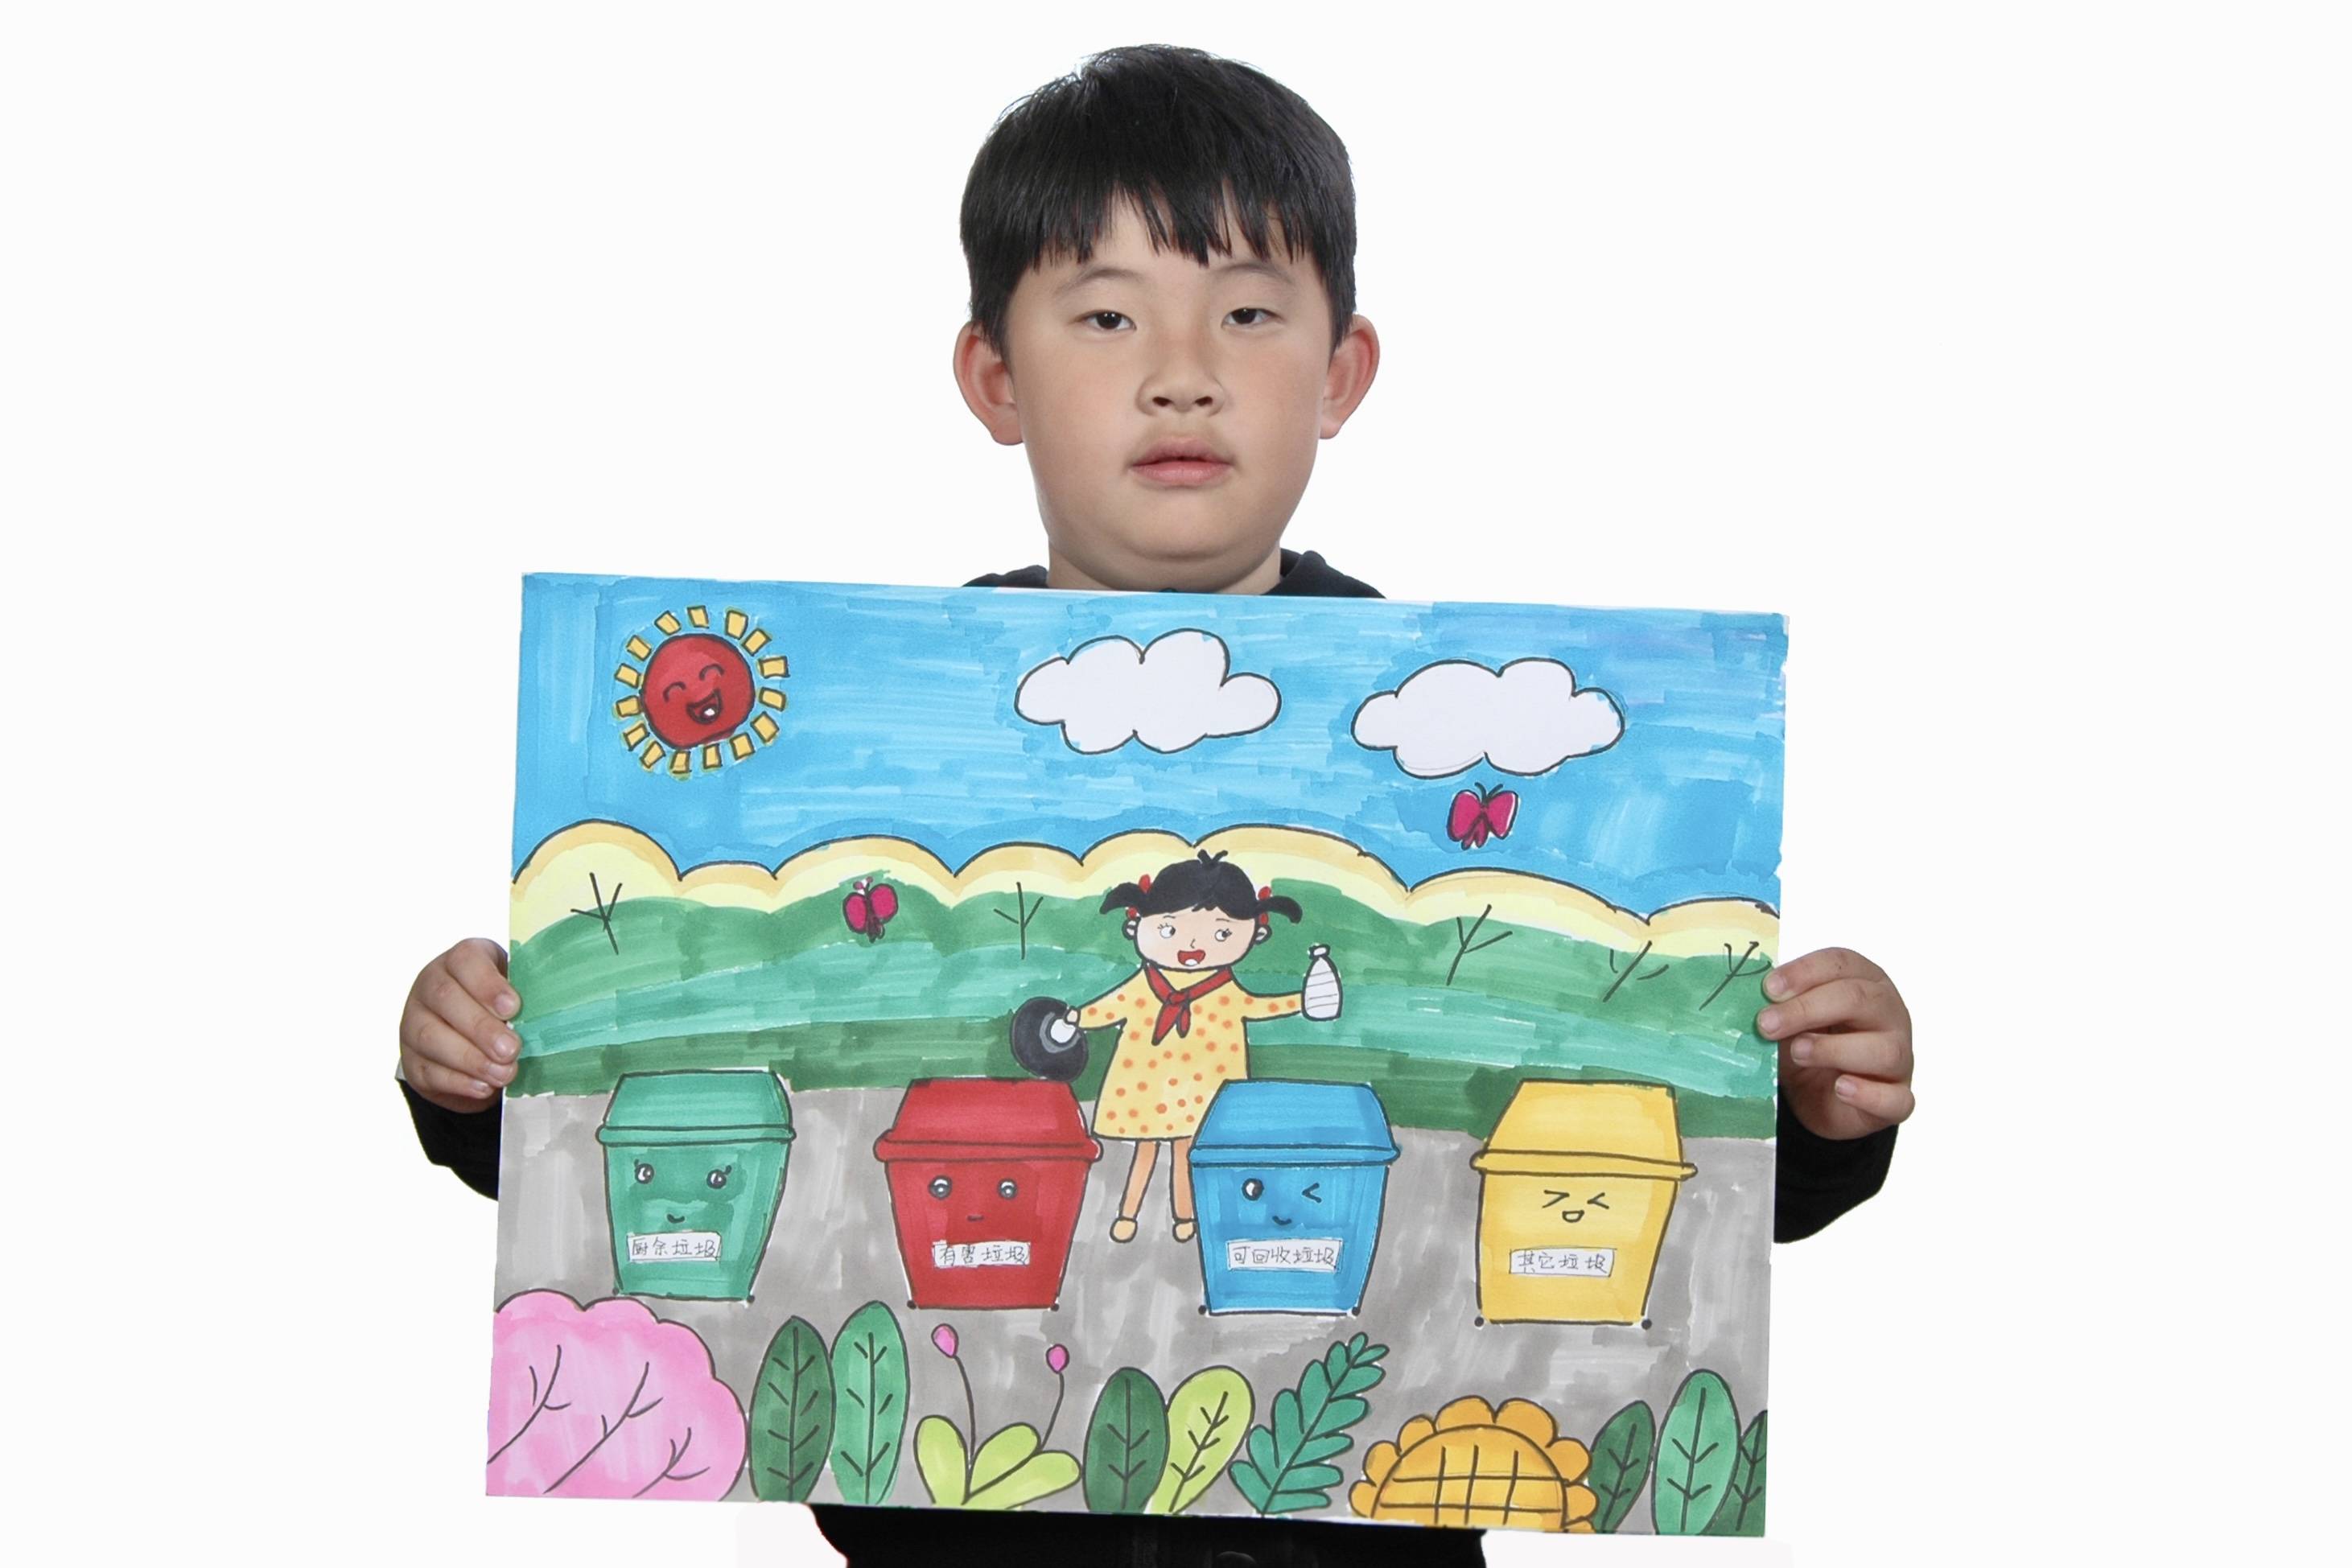 沈阳小学生垃圾分类绘画作品展示(24-47幅)